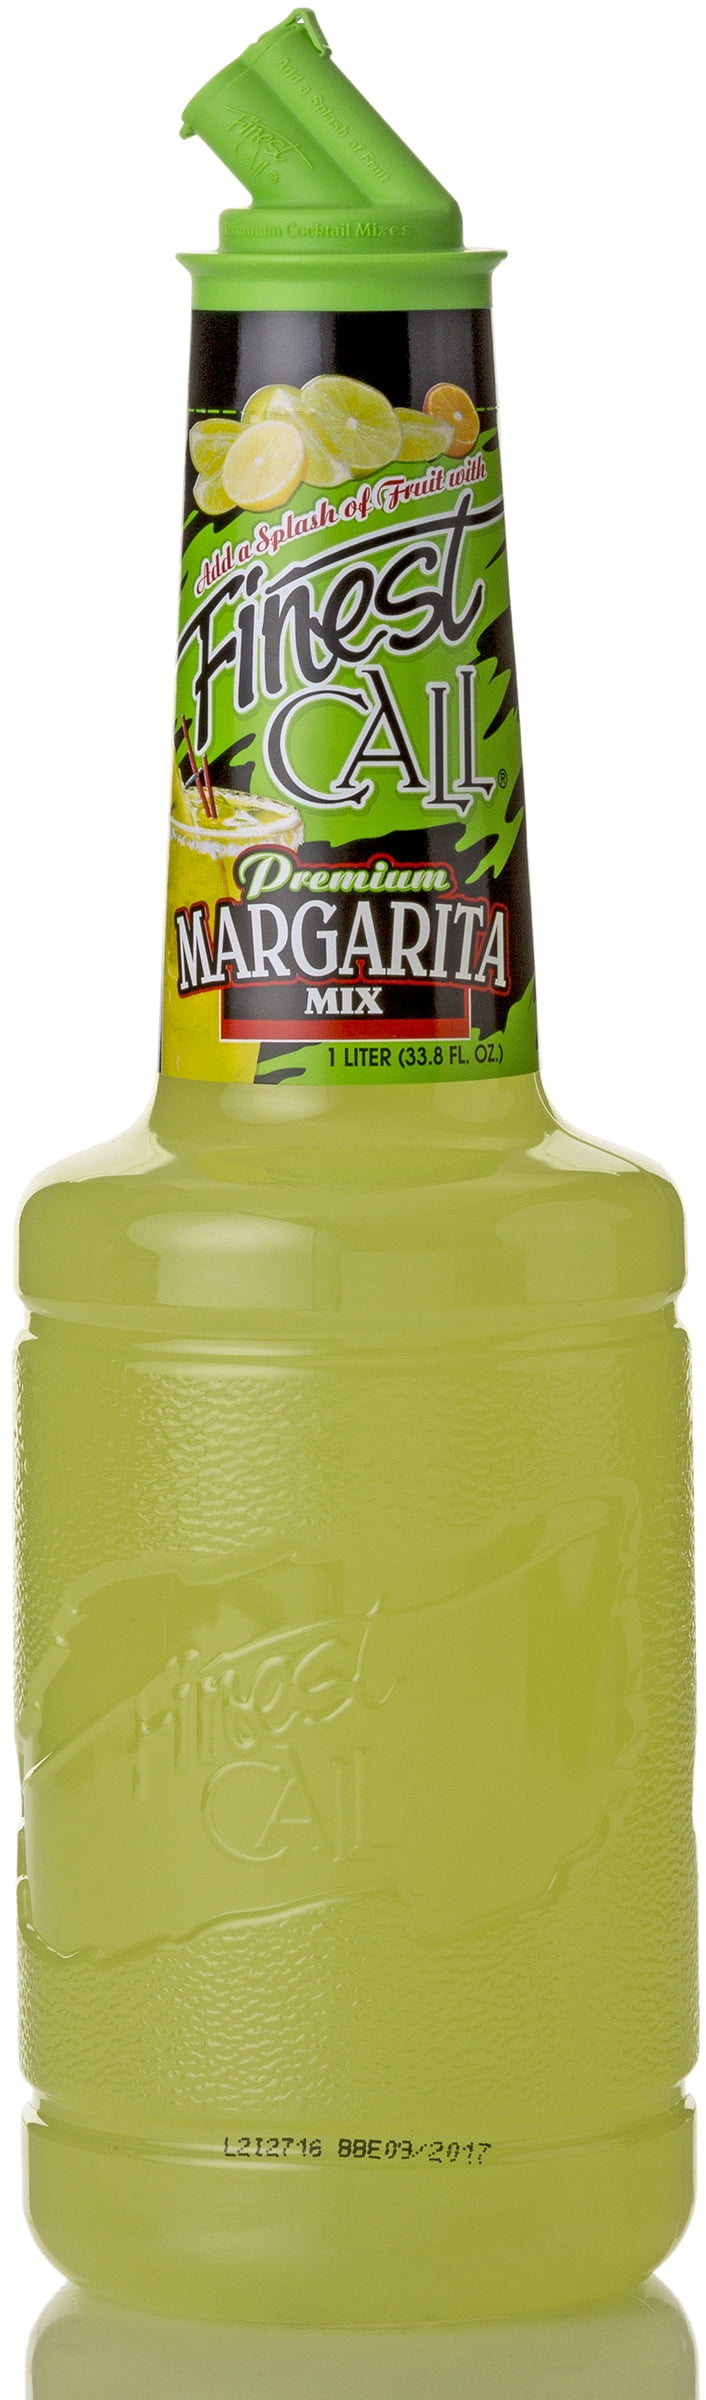 Finest Call Margarita Mix, 1 L - Walmart.com.